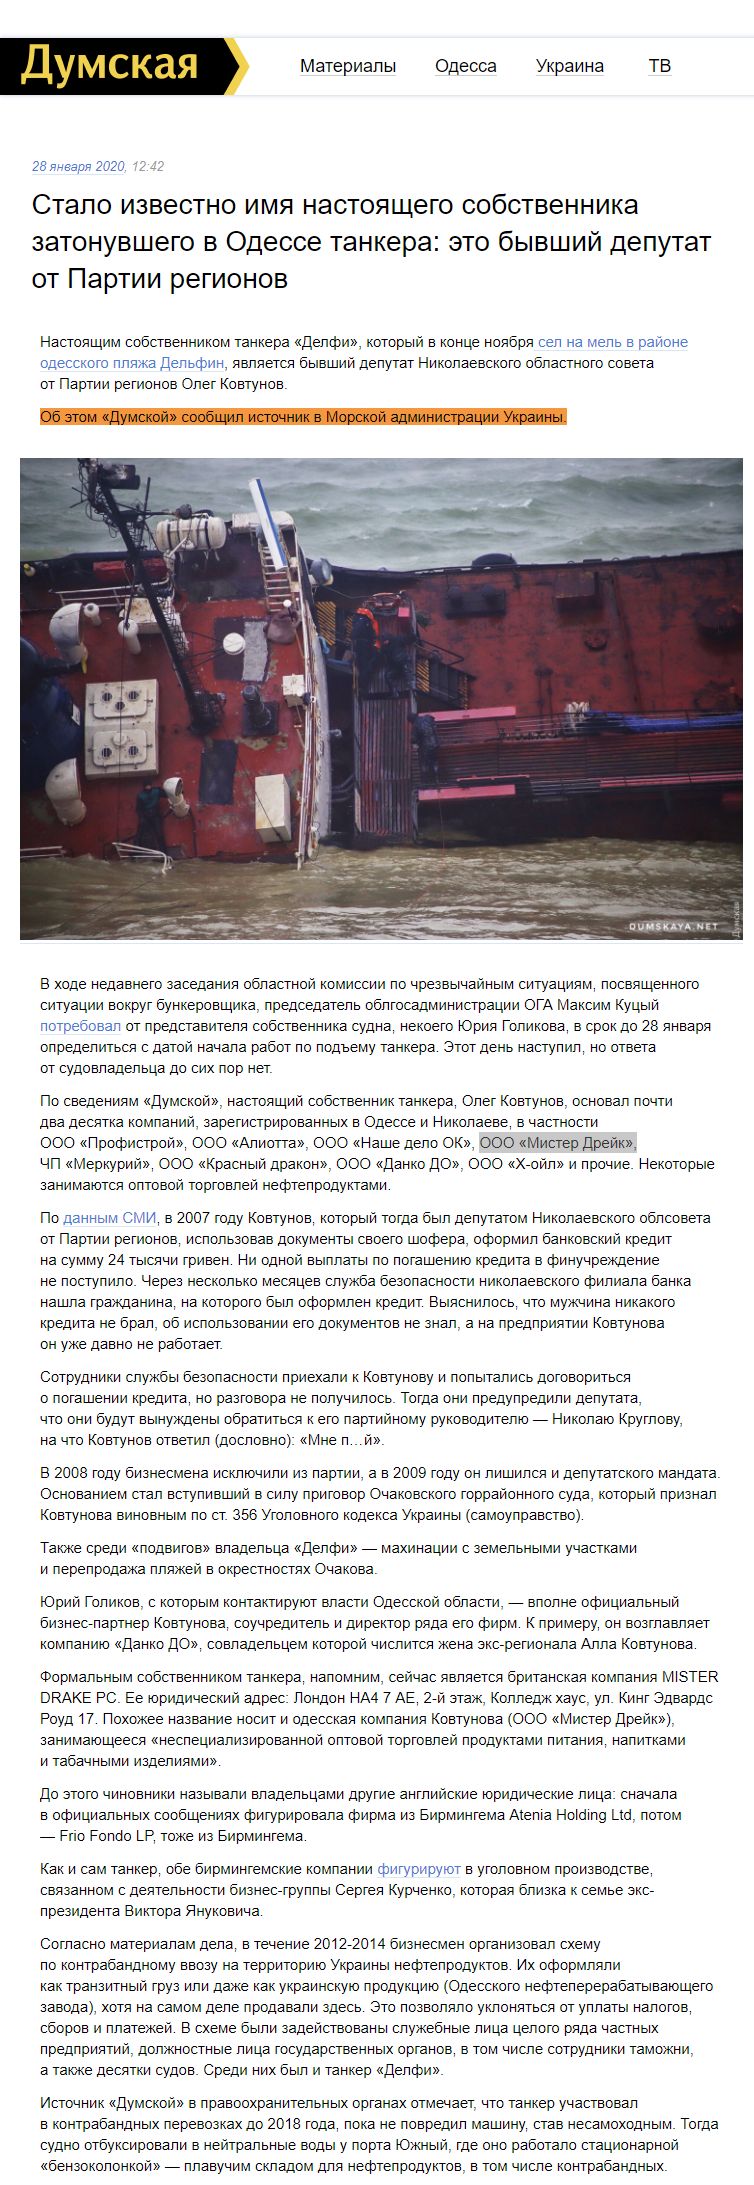 https://dumskaya.net/news/nastoyashchiy-hozyain-tankera-delfi-byvshiy-depu-108007/